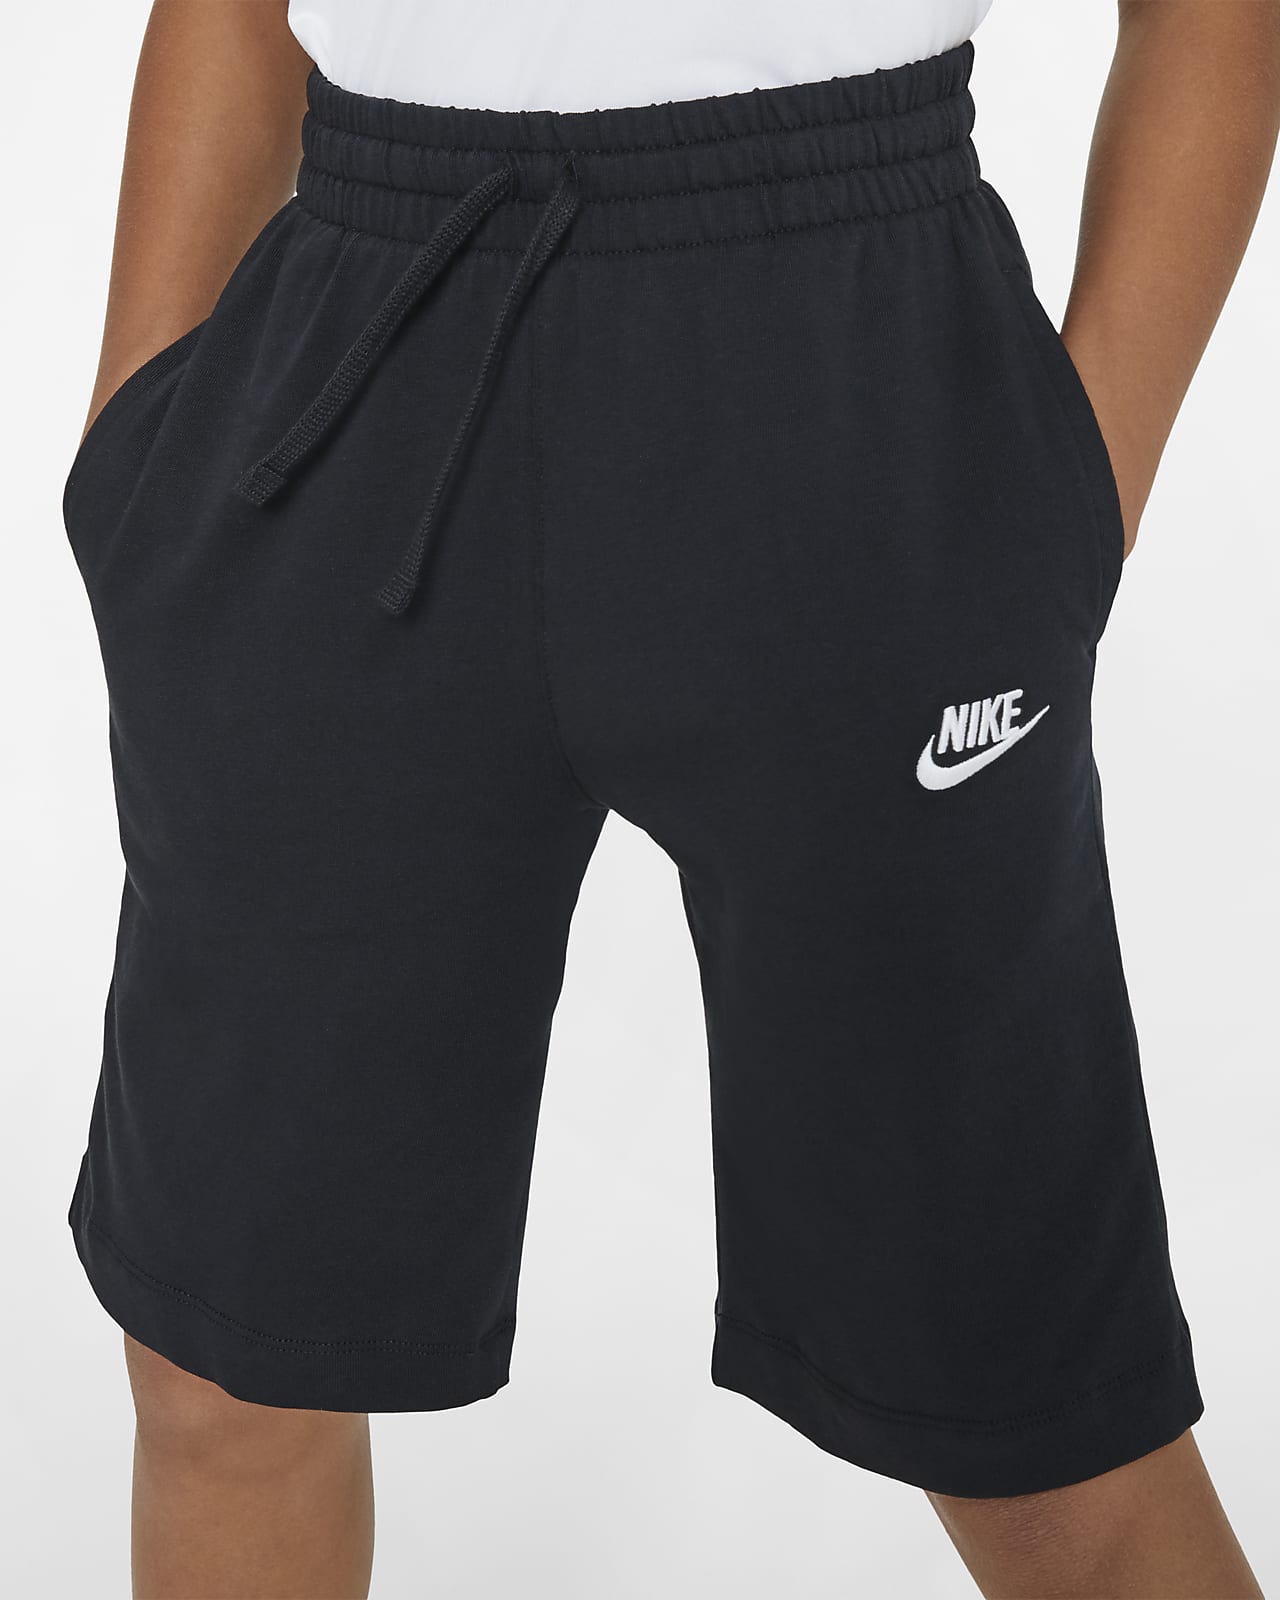 youth boys nike shorts